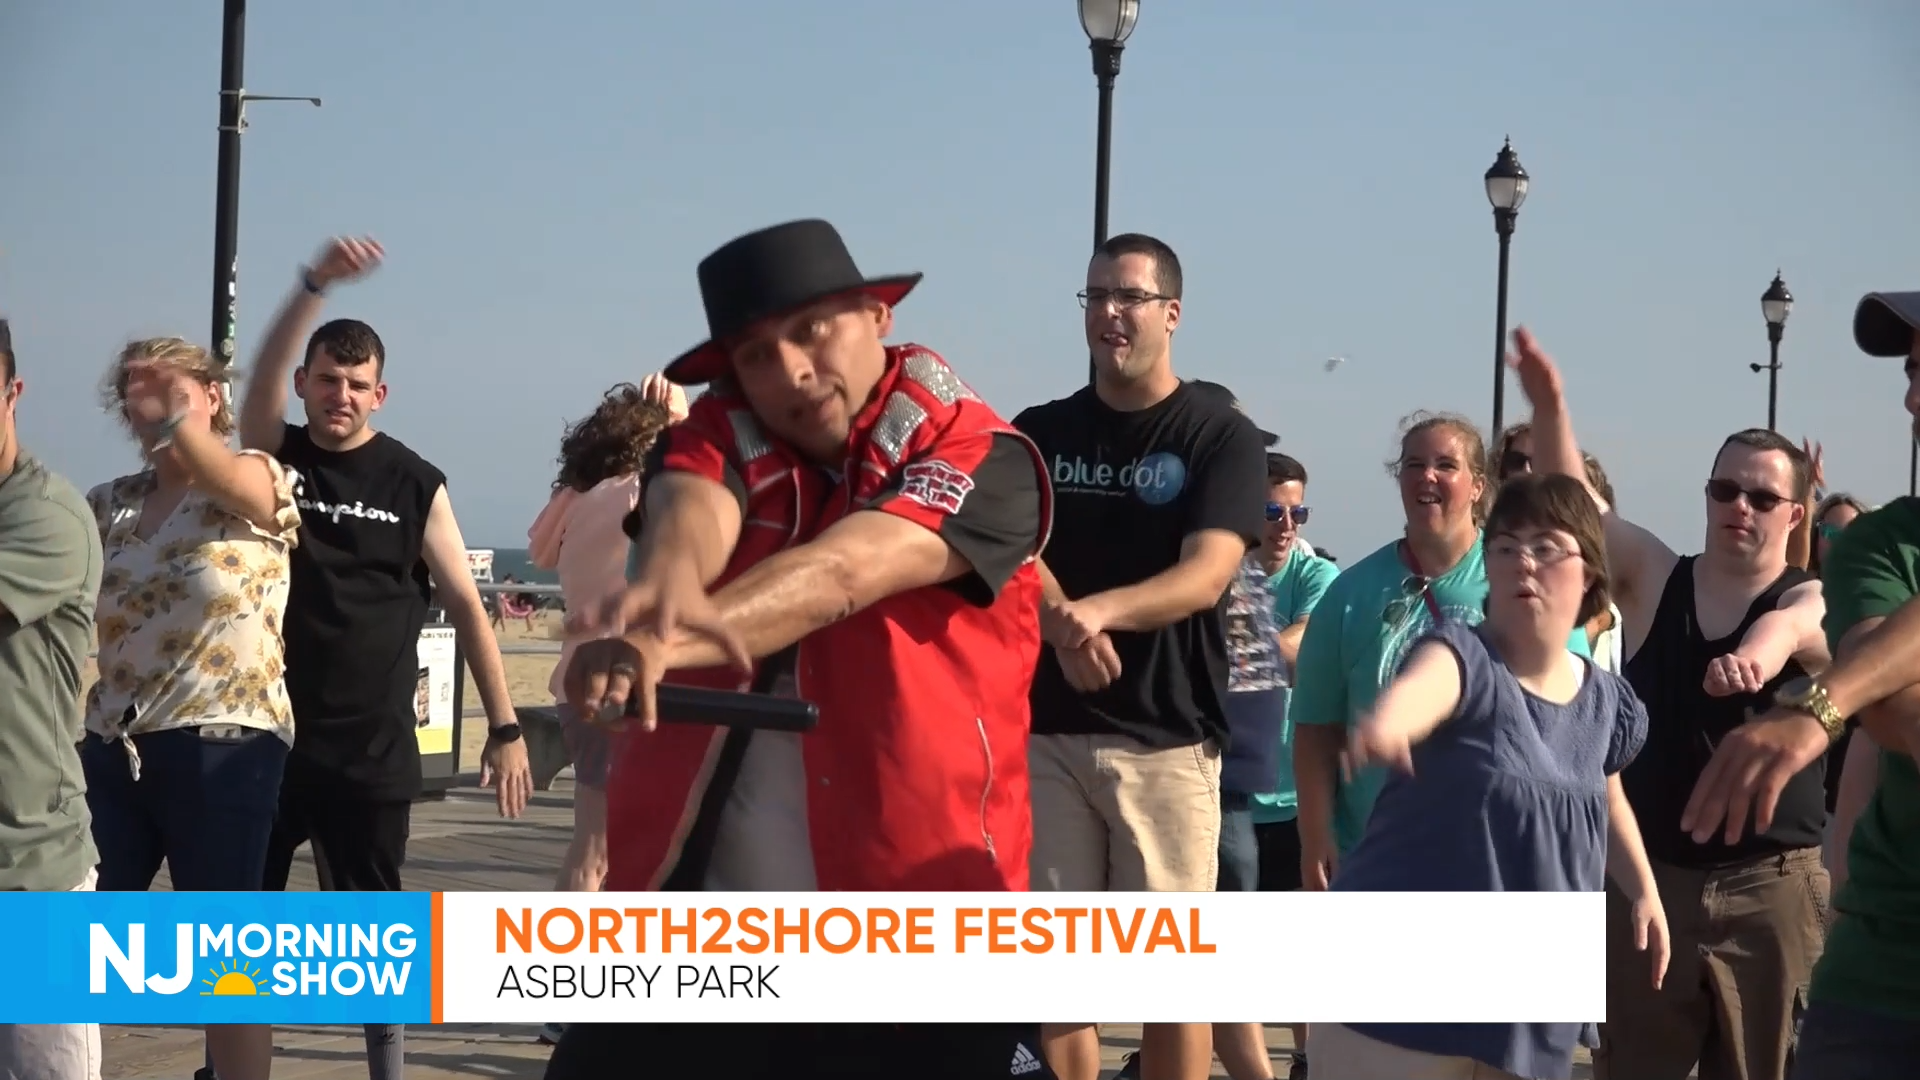 North2Shore Festival